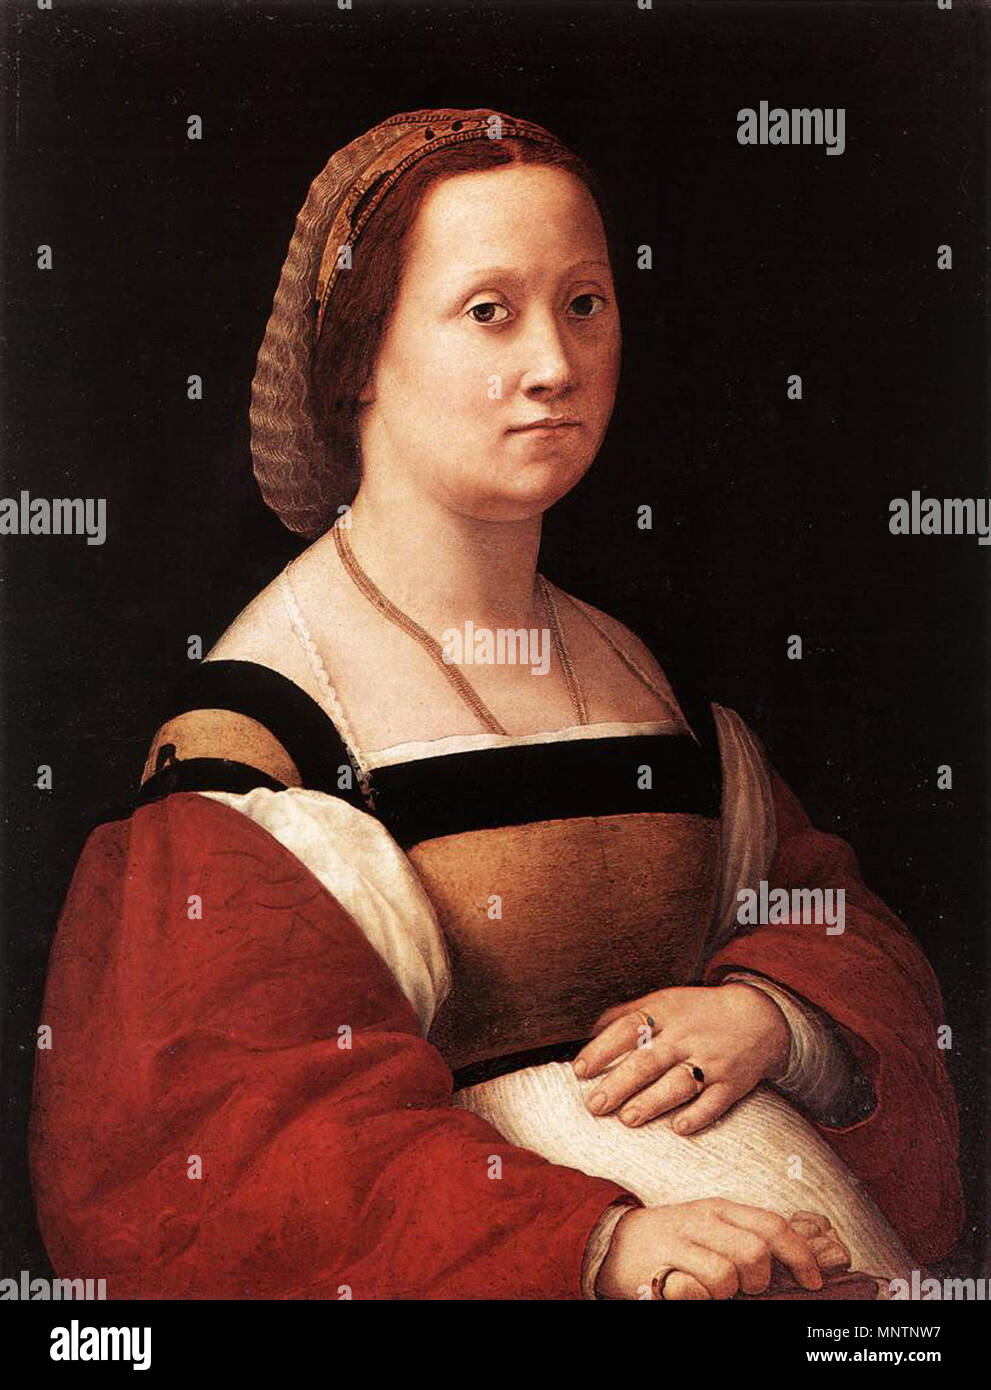 Englisch: Porträt einer Frau Italiano: La Donna gravida zwischen 1505 und 1506. 1042 Raphael-La DonnaGravida (1505-1506) Stockfoto